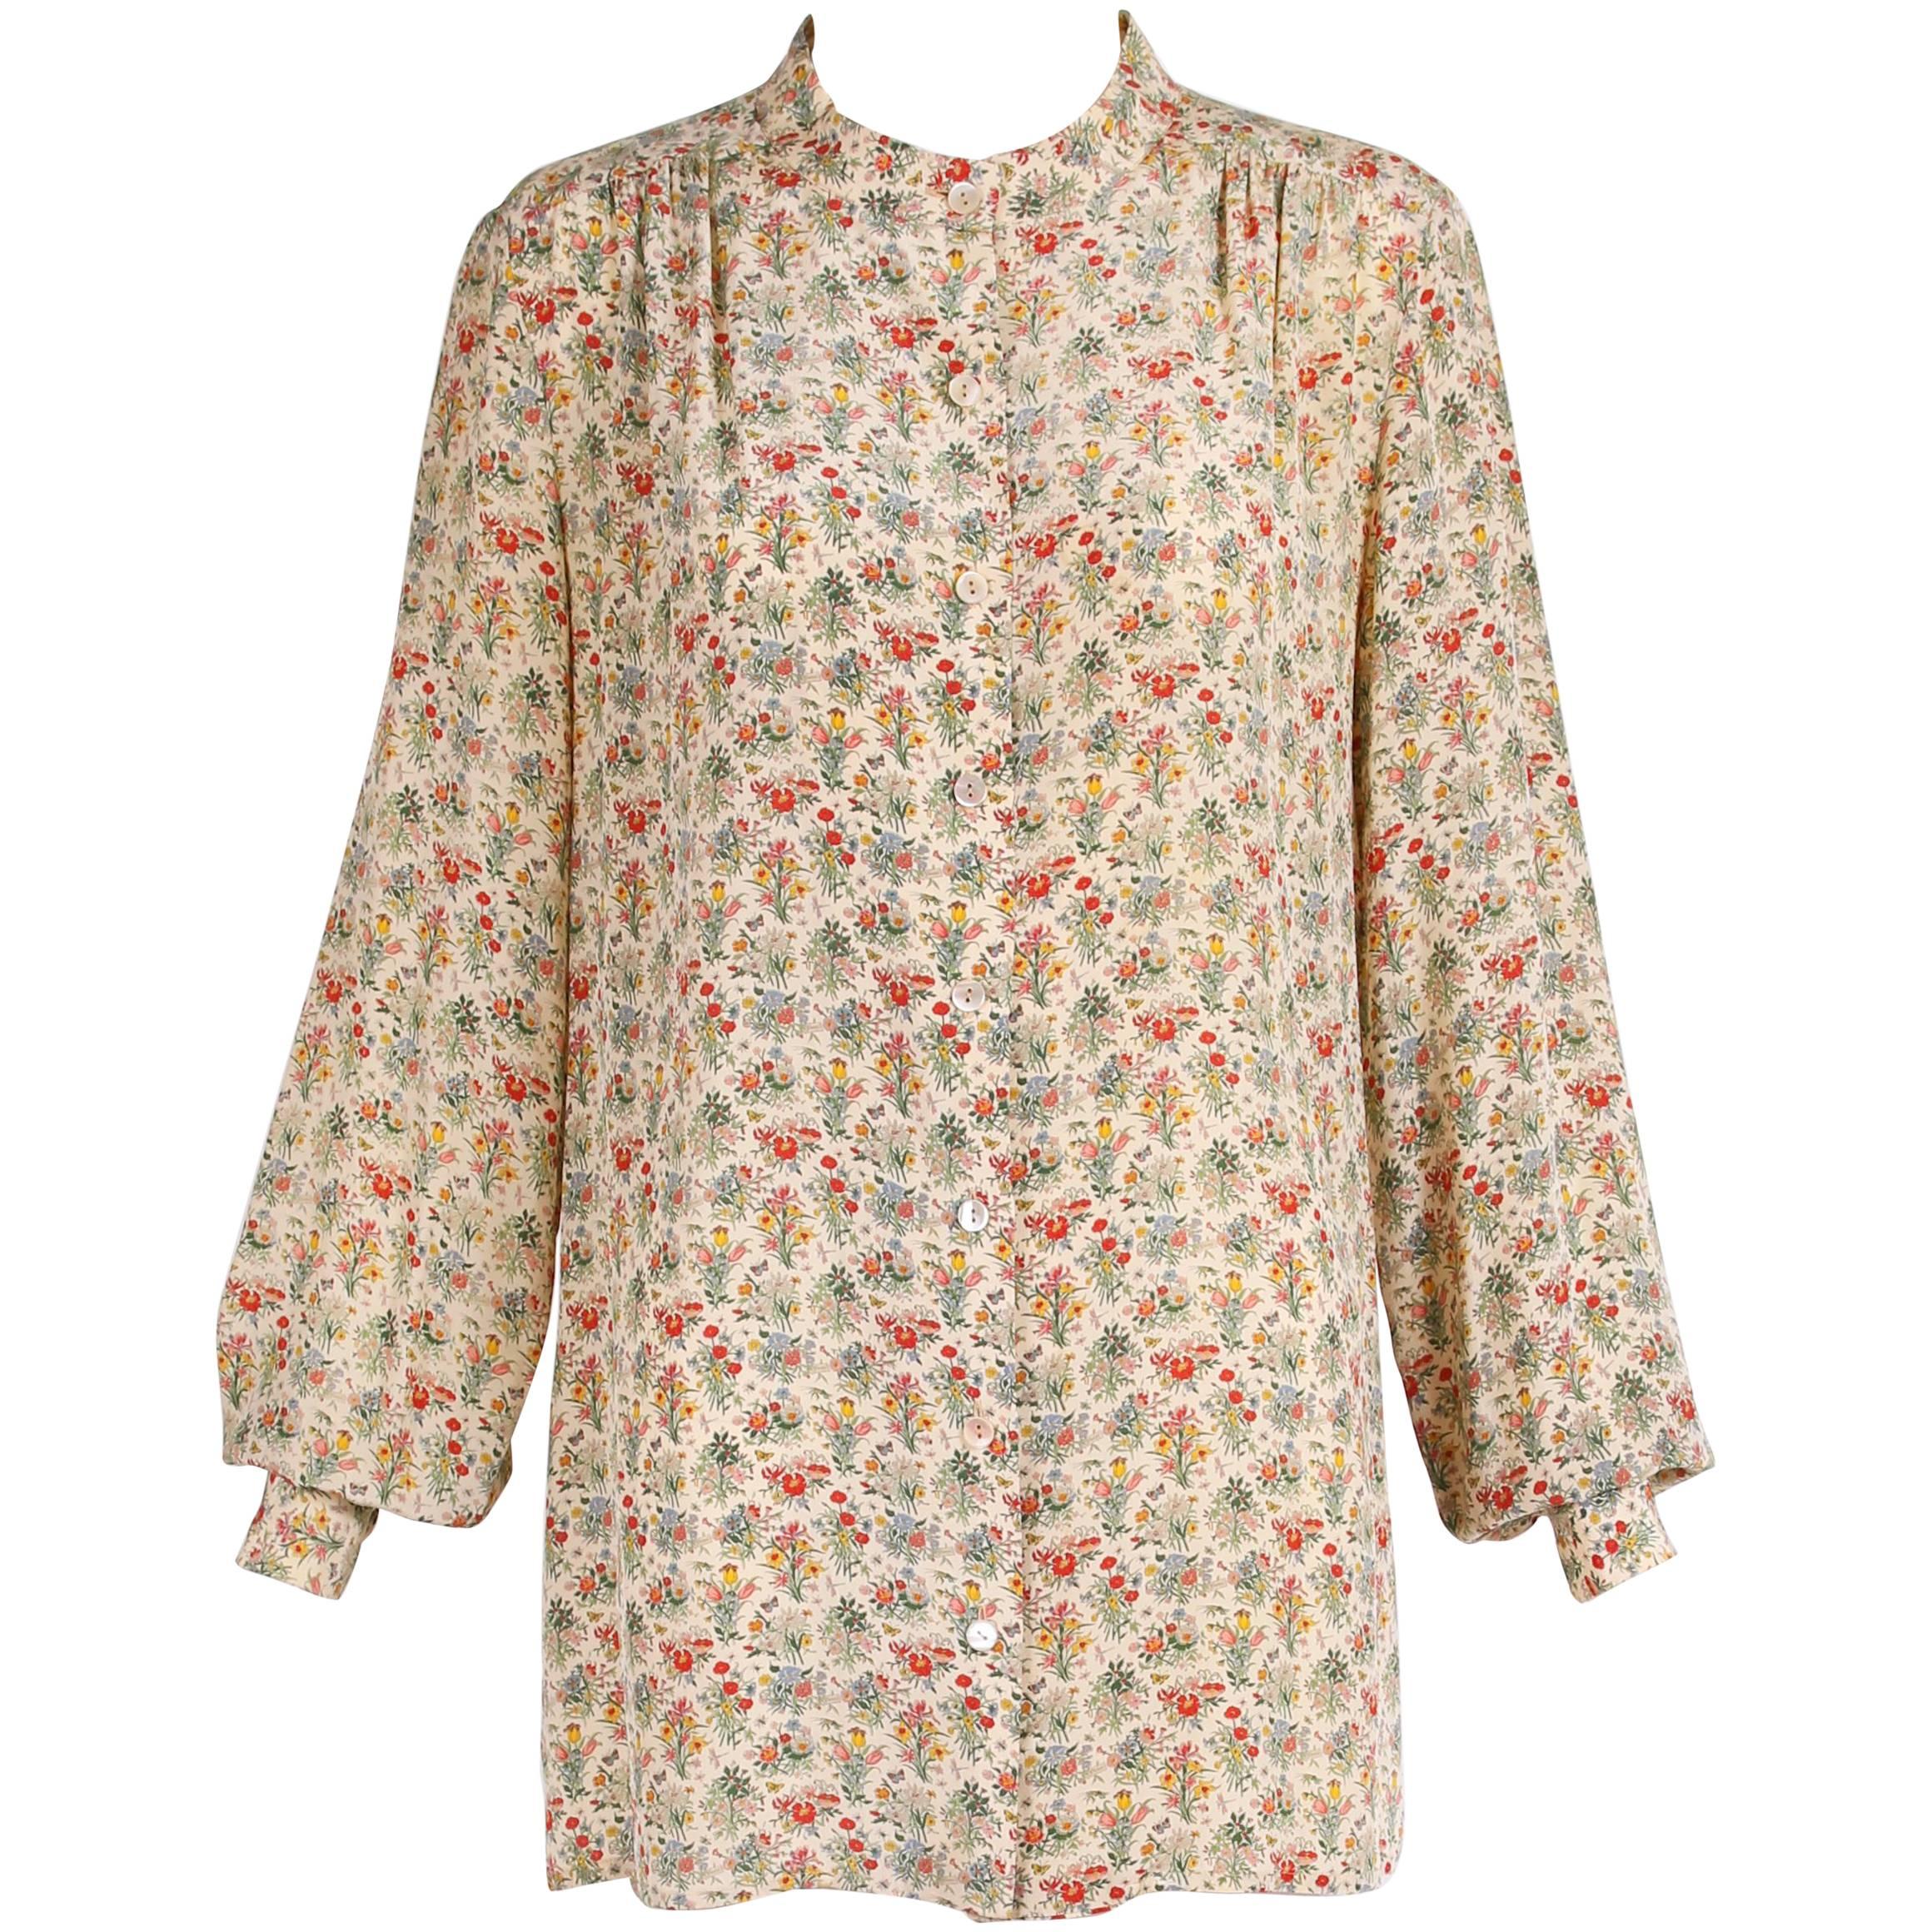 Gucci Accornero Floral Print Silk Tunic Style Blouse, 1970s 